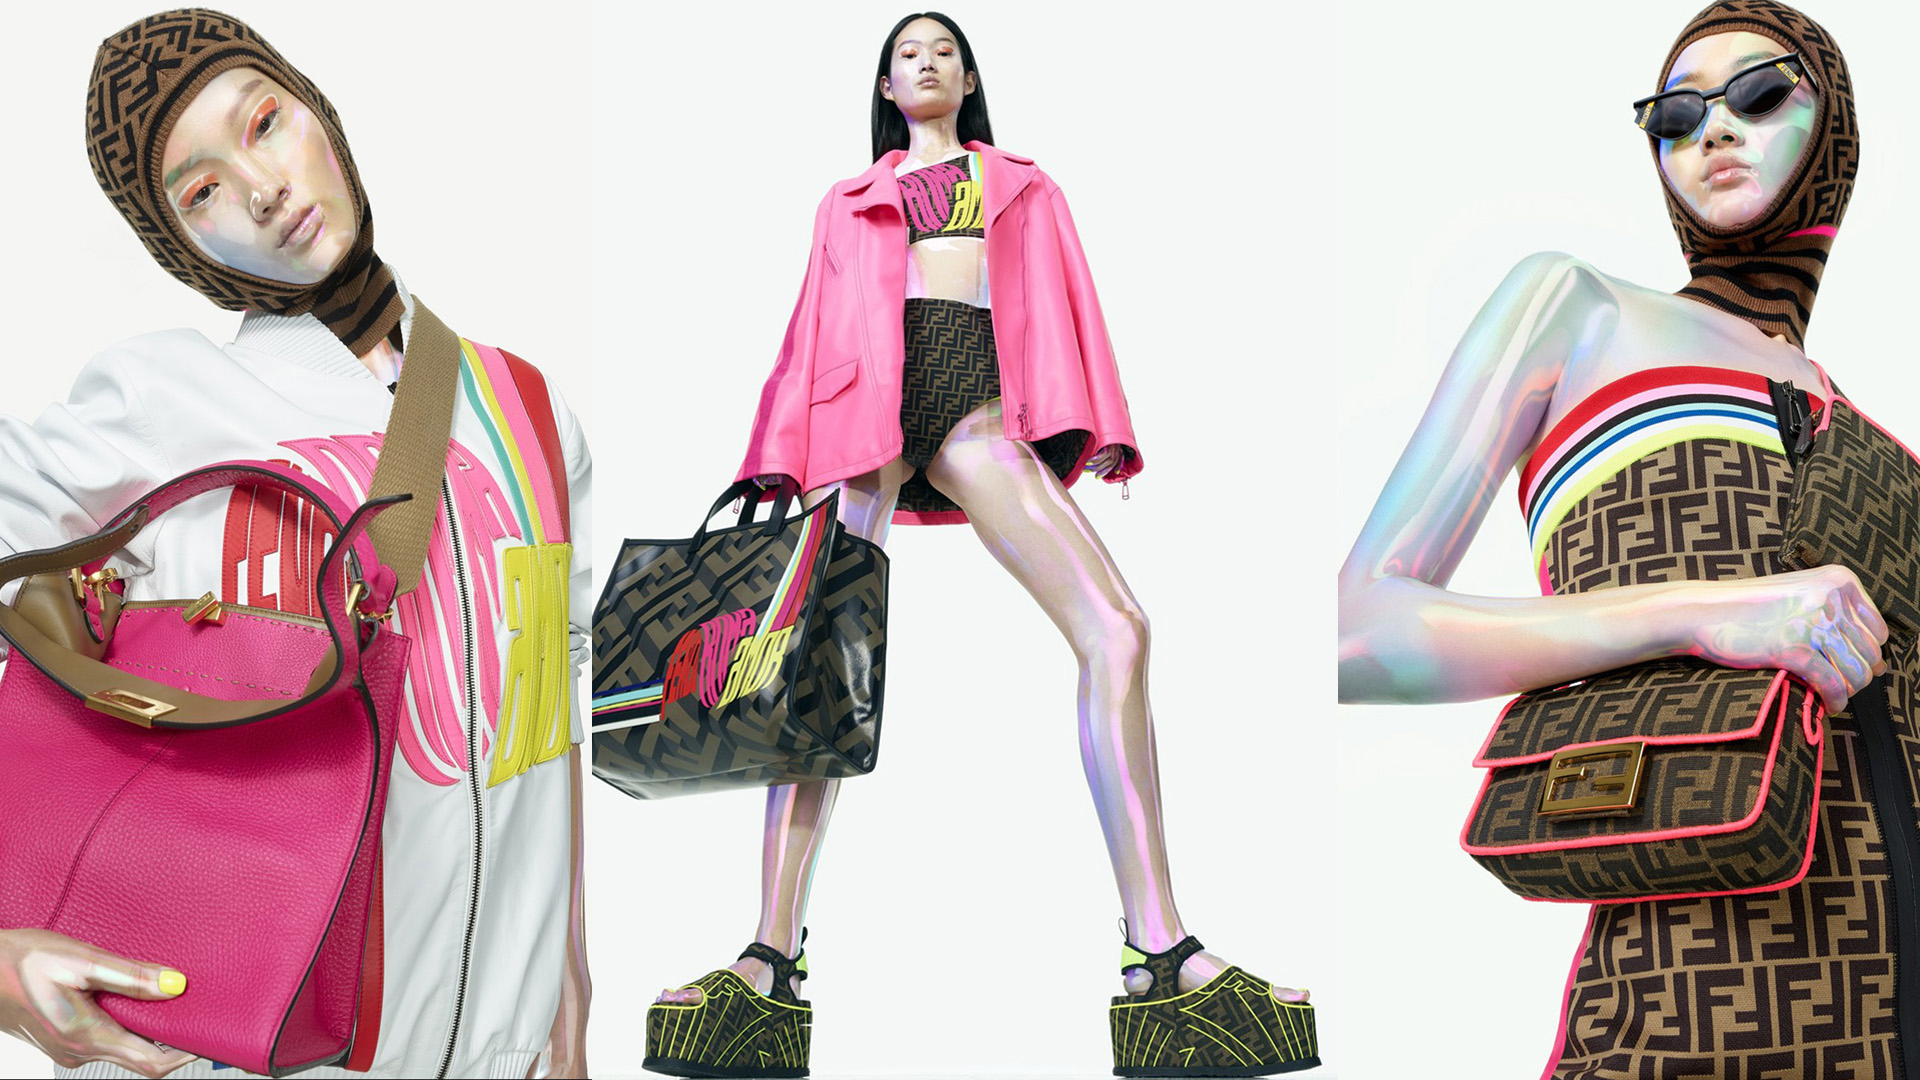 Colores neones, estética deportiva: la nueva colección cápsula de Fendi.